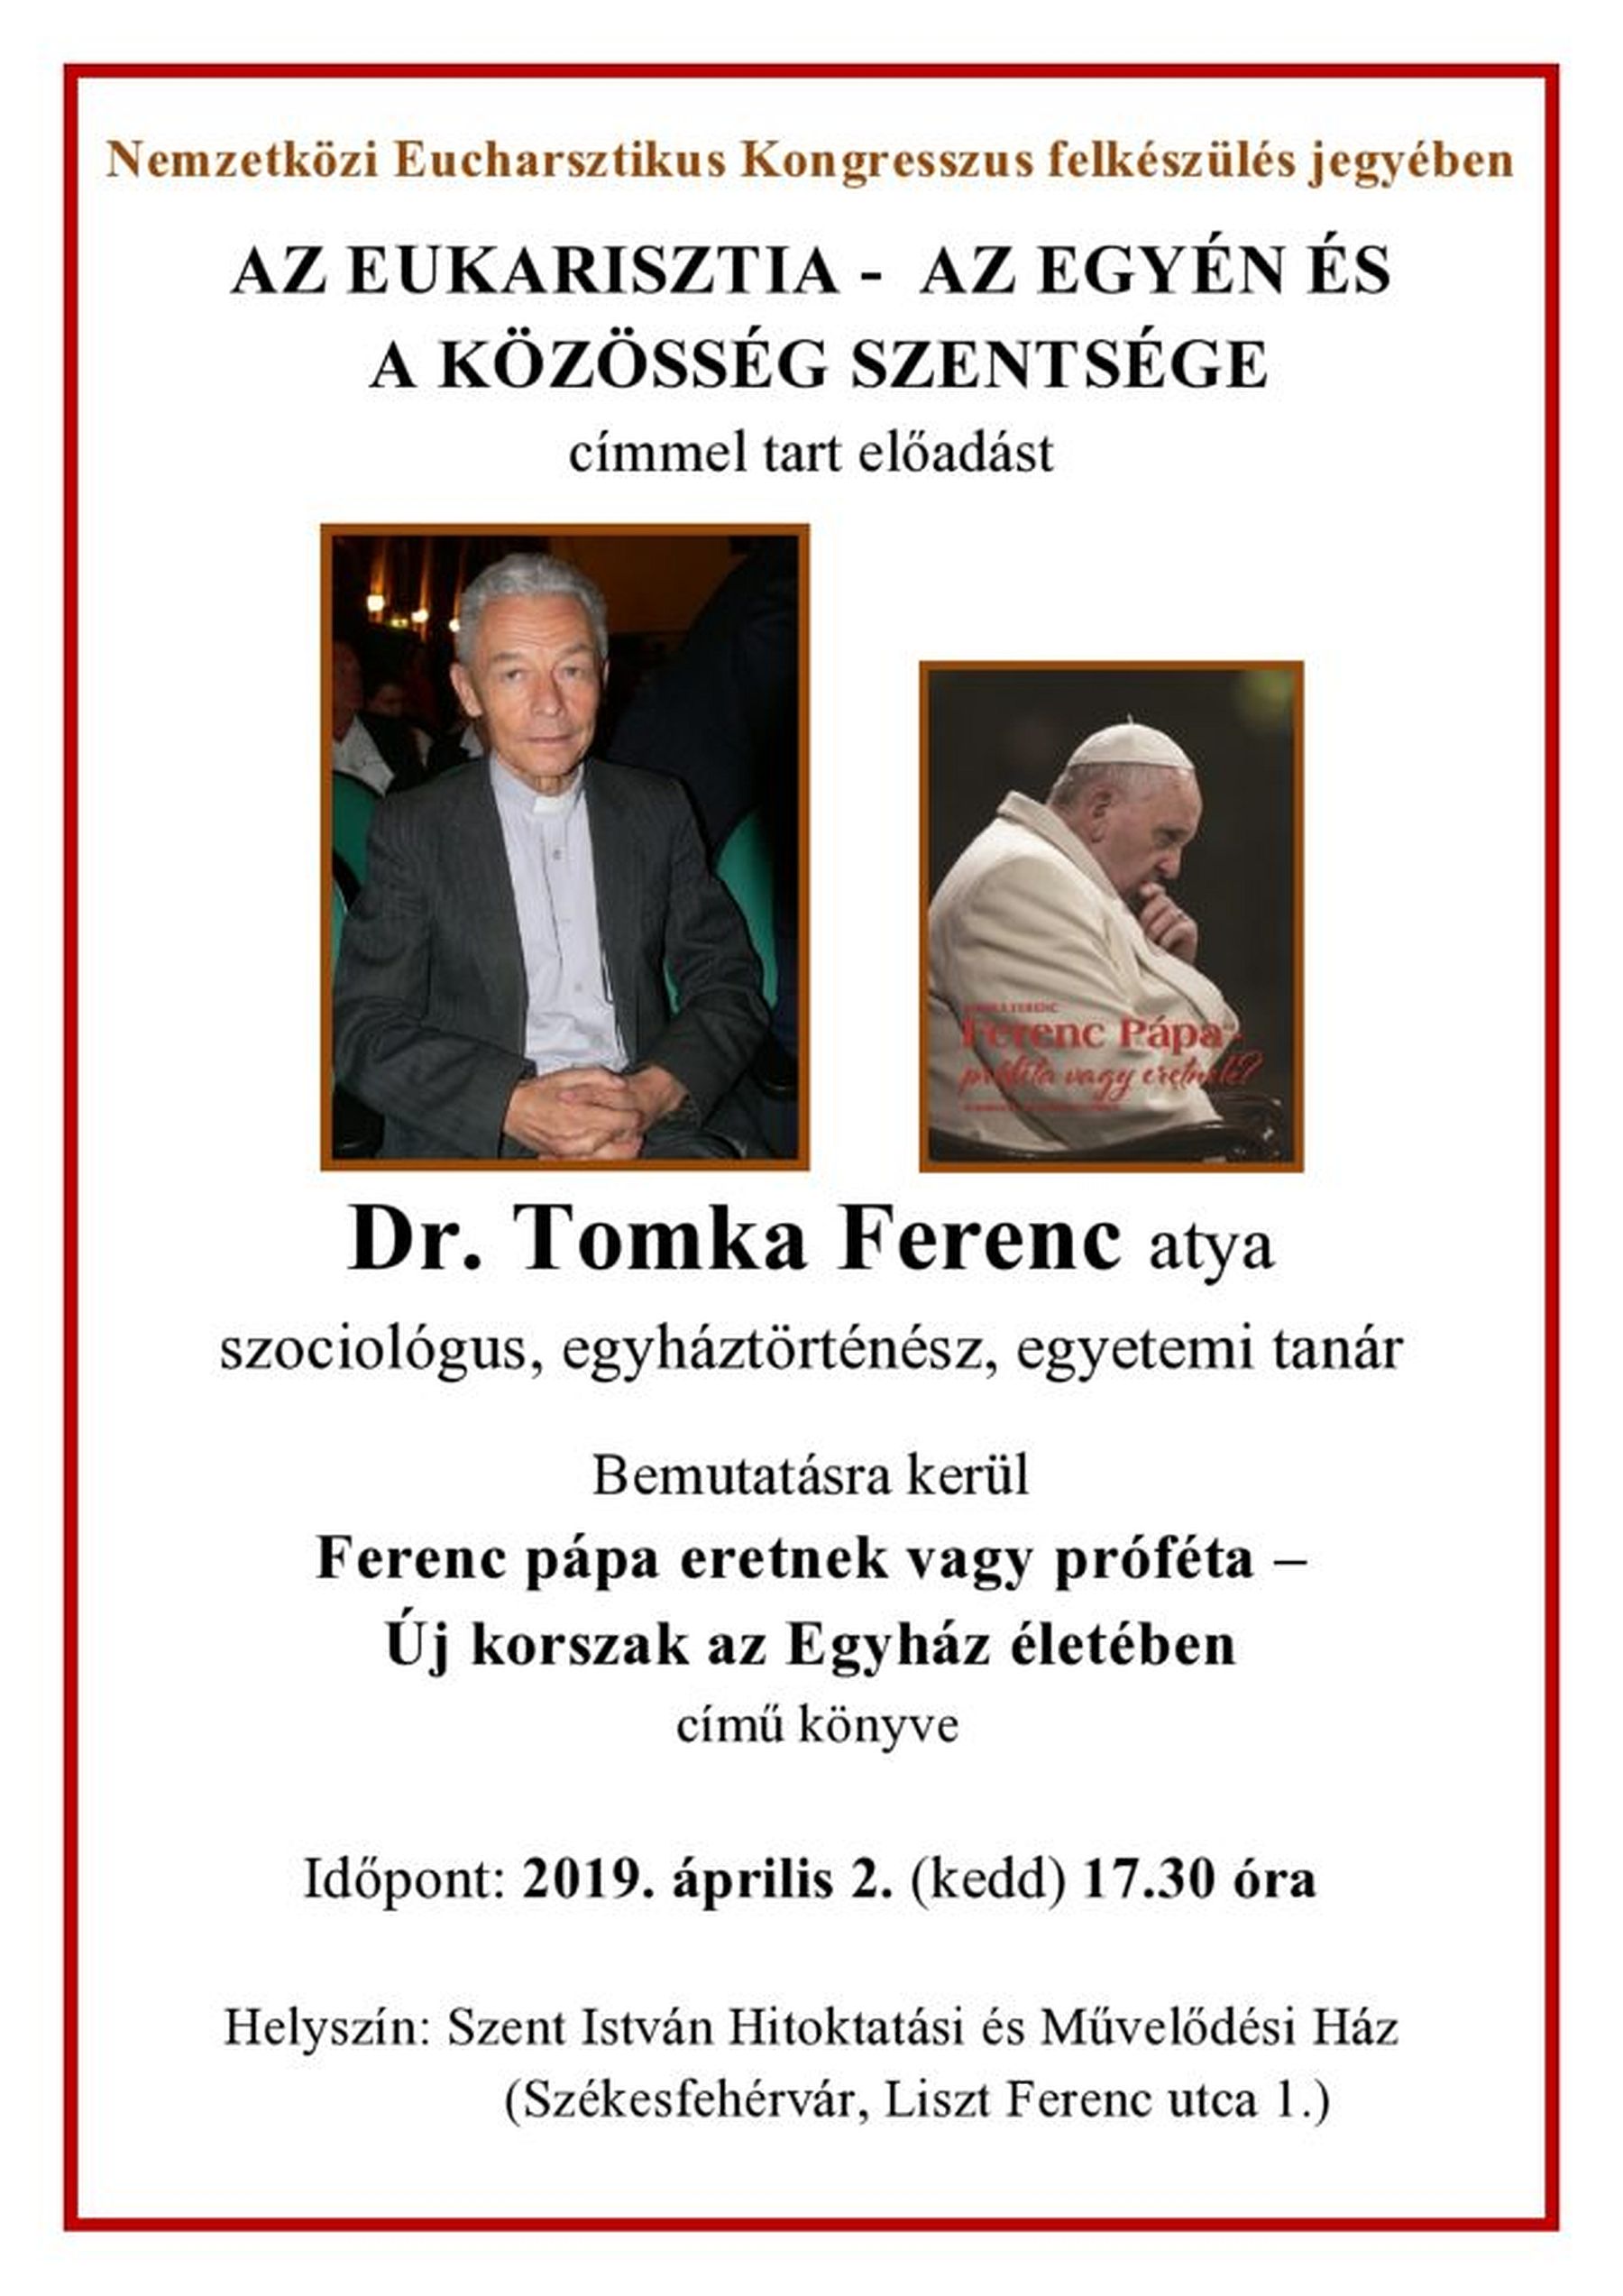 Dr. Tomka Ferenc könyvbemutatója és előadása a Szent István Művelődési Házban